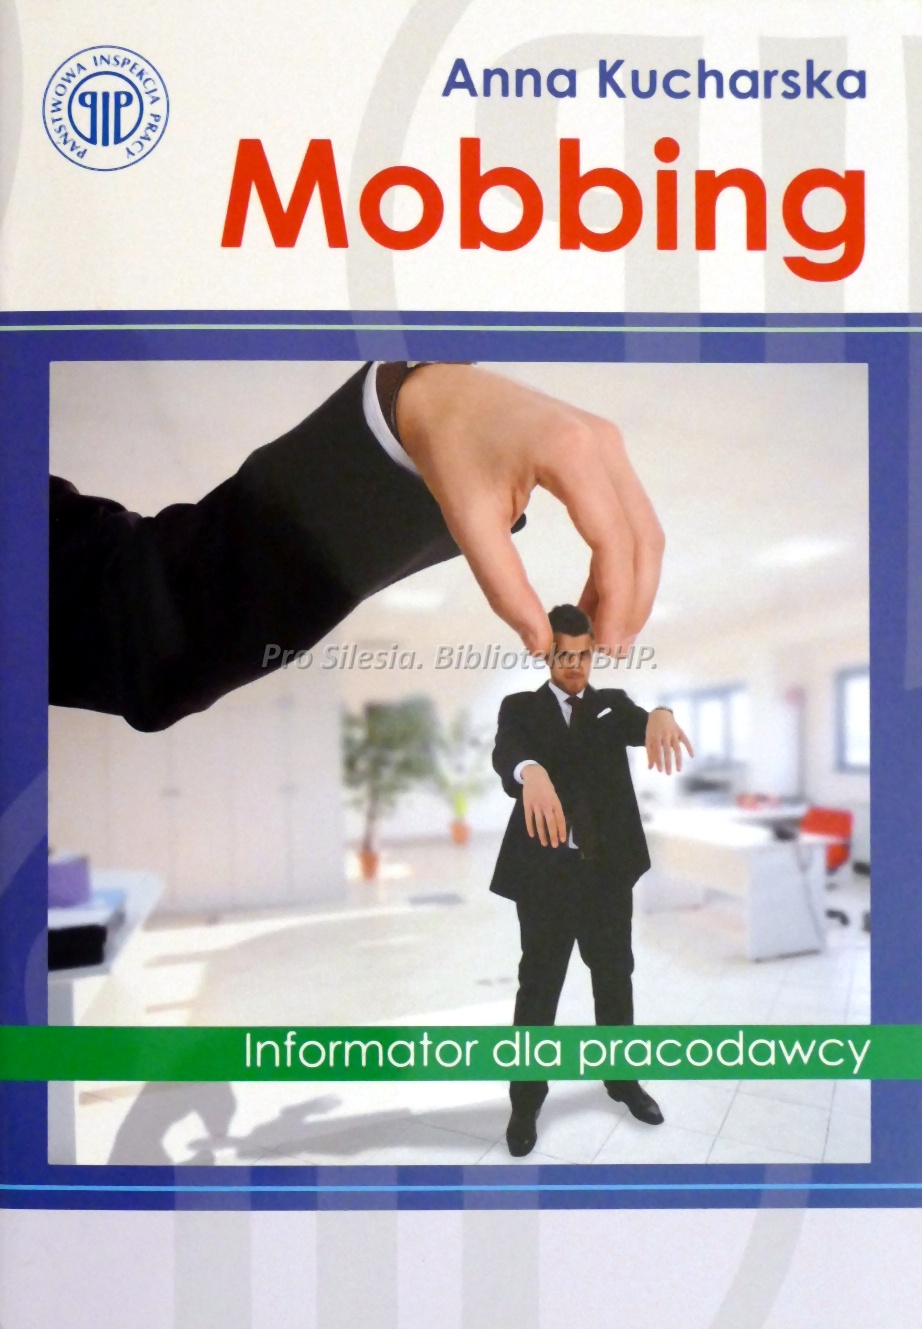 Mobbing informator dla pracodawcy, wyd.PIP